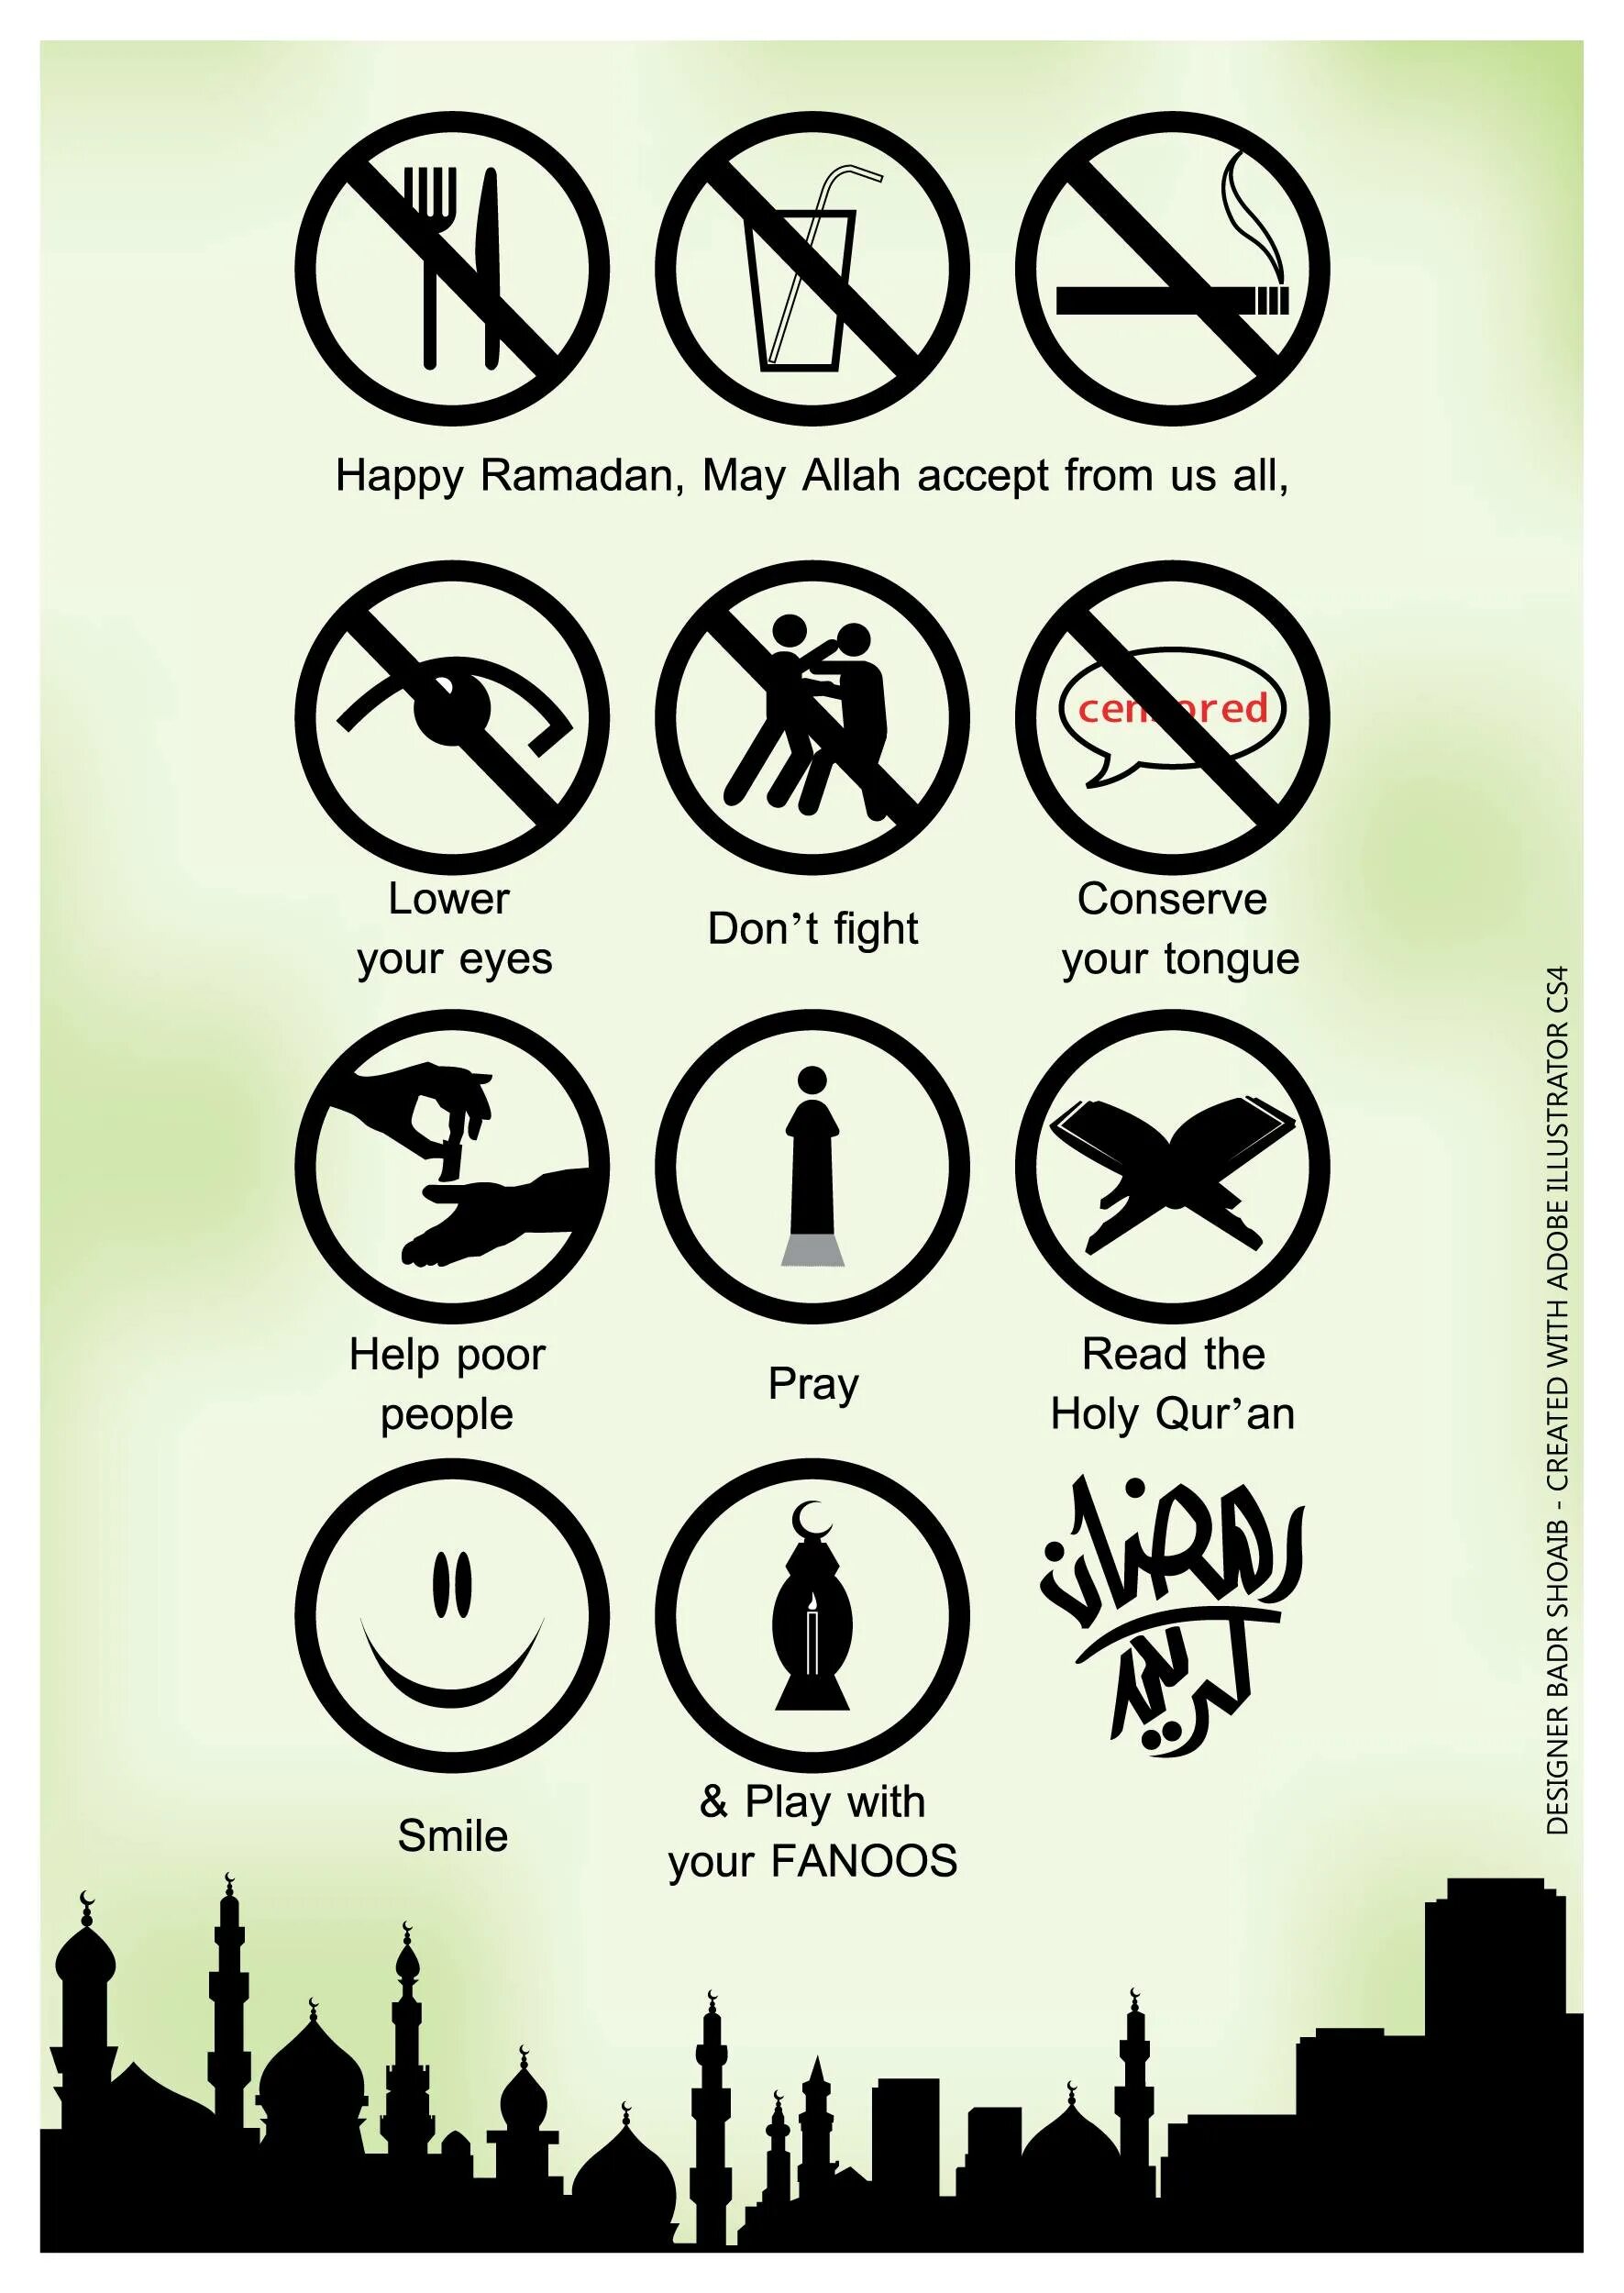 Что нельзя делать в уразу. Рамадан. Что запрещено делать в Рамадан. Что запрещено делать в месяц Рамадан. Запреты в Рамадан для мужчин.